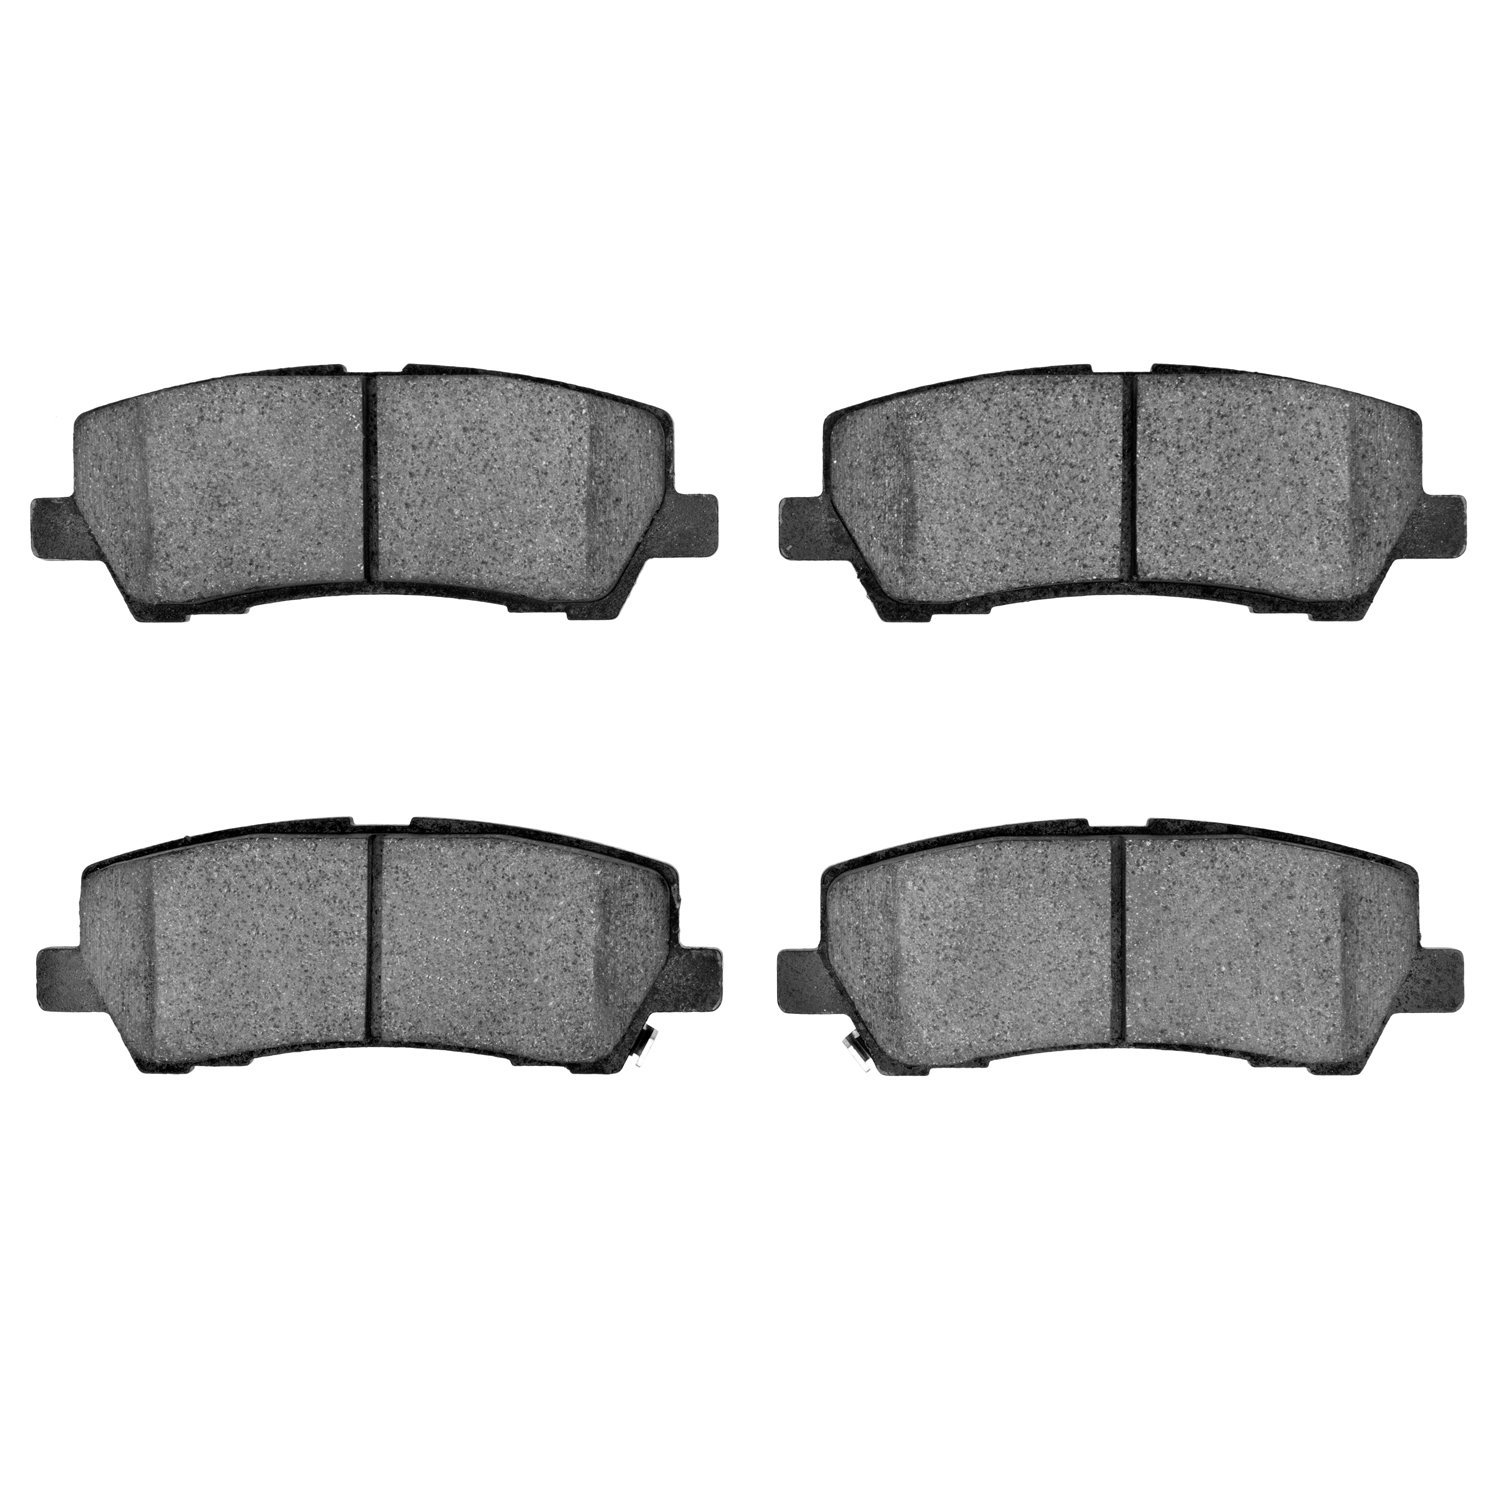 3000-Series Ceramic Brake Pads, Fits Select